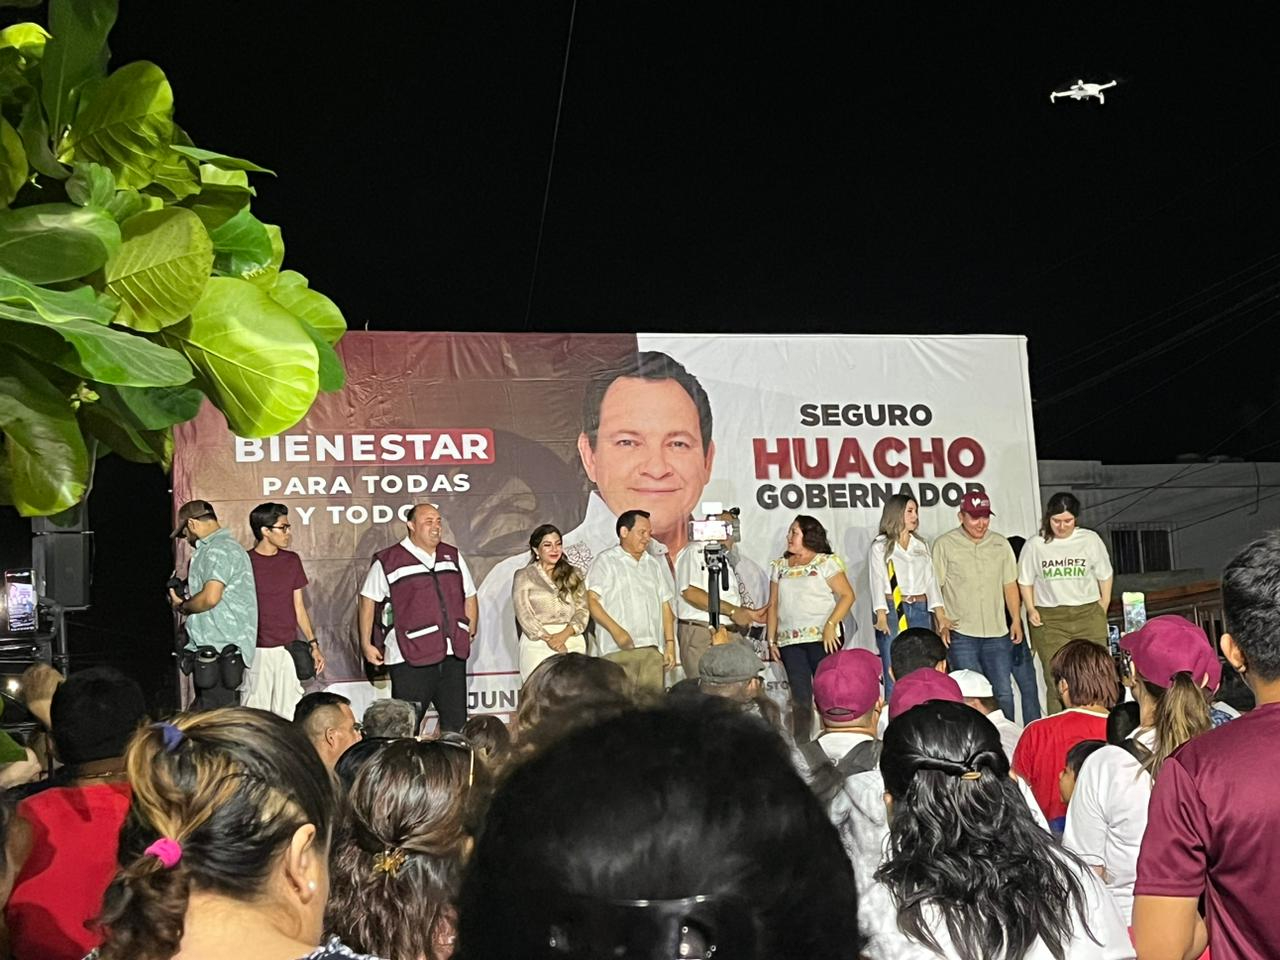 Así se desarrolla el mitin de "Huacho" Díaz Mena en Progreso